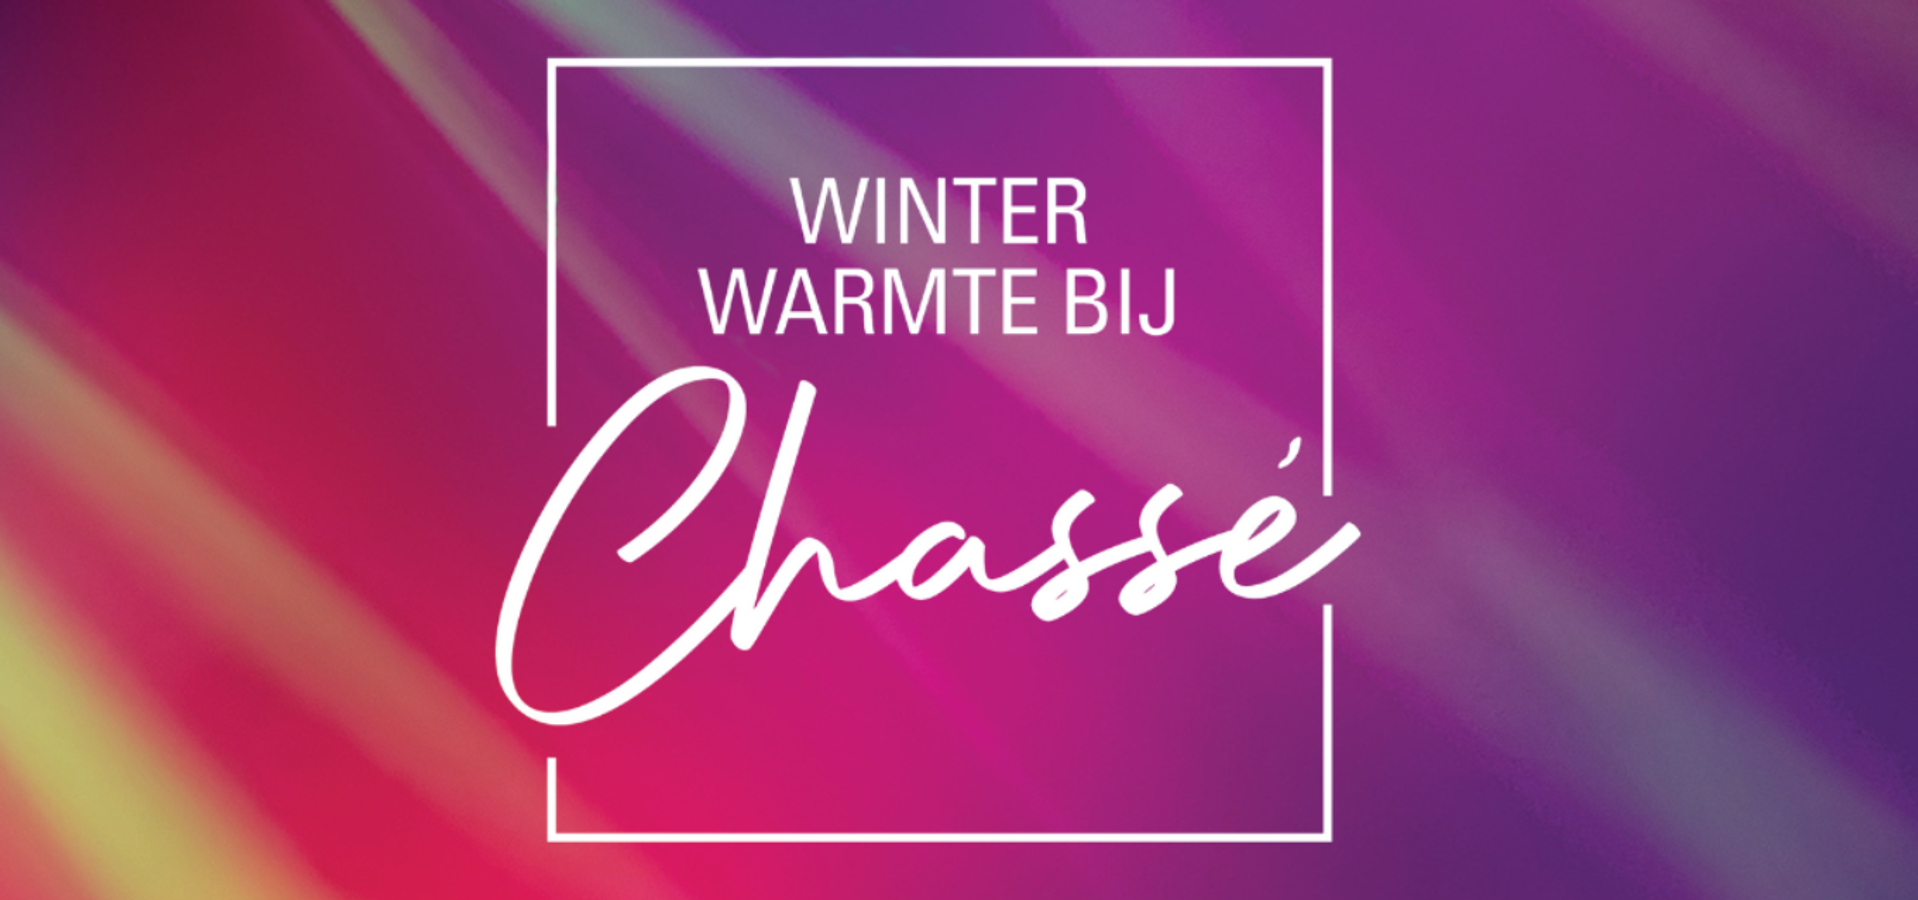 Winter Warmte bij Chassé - Ruud van Meijel